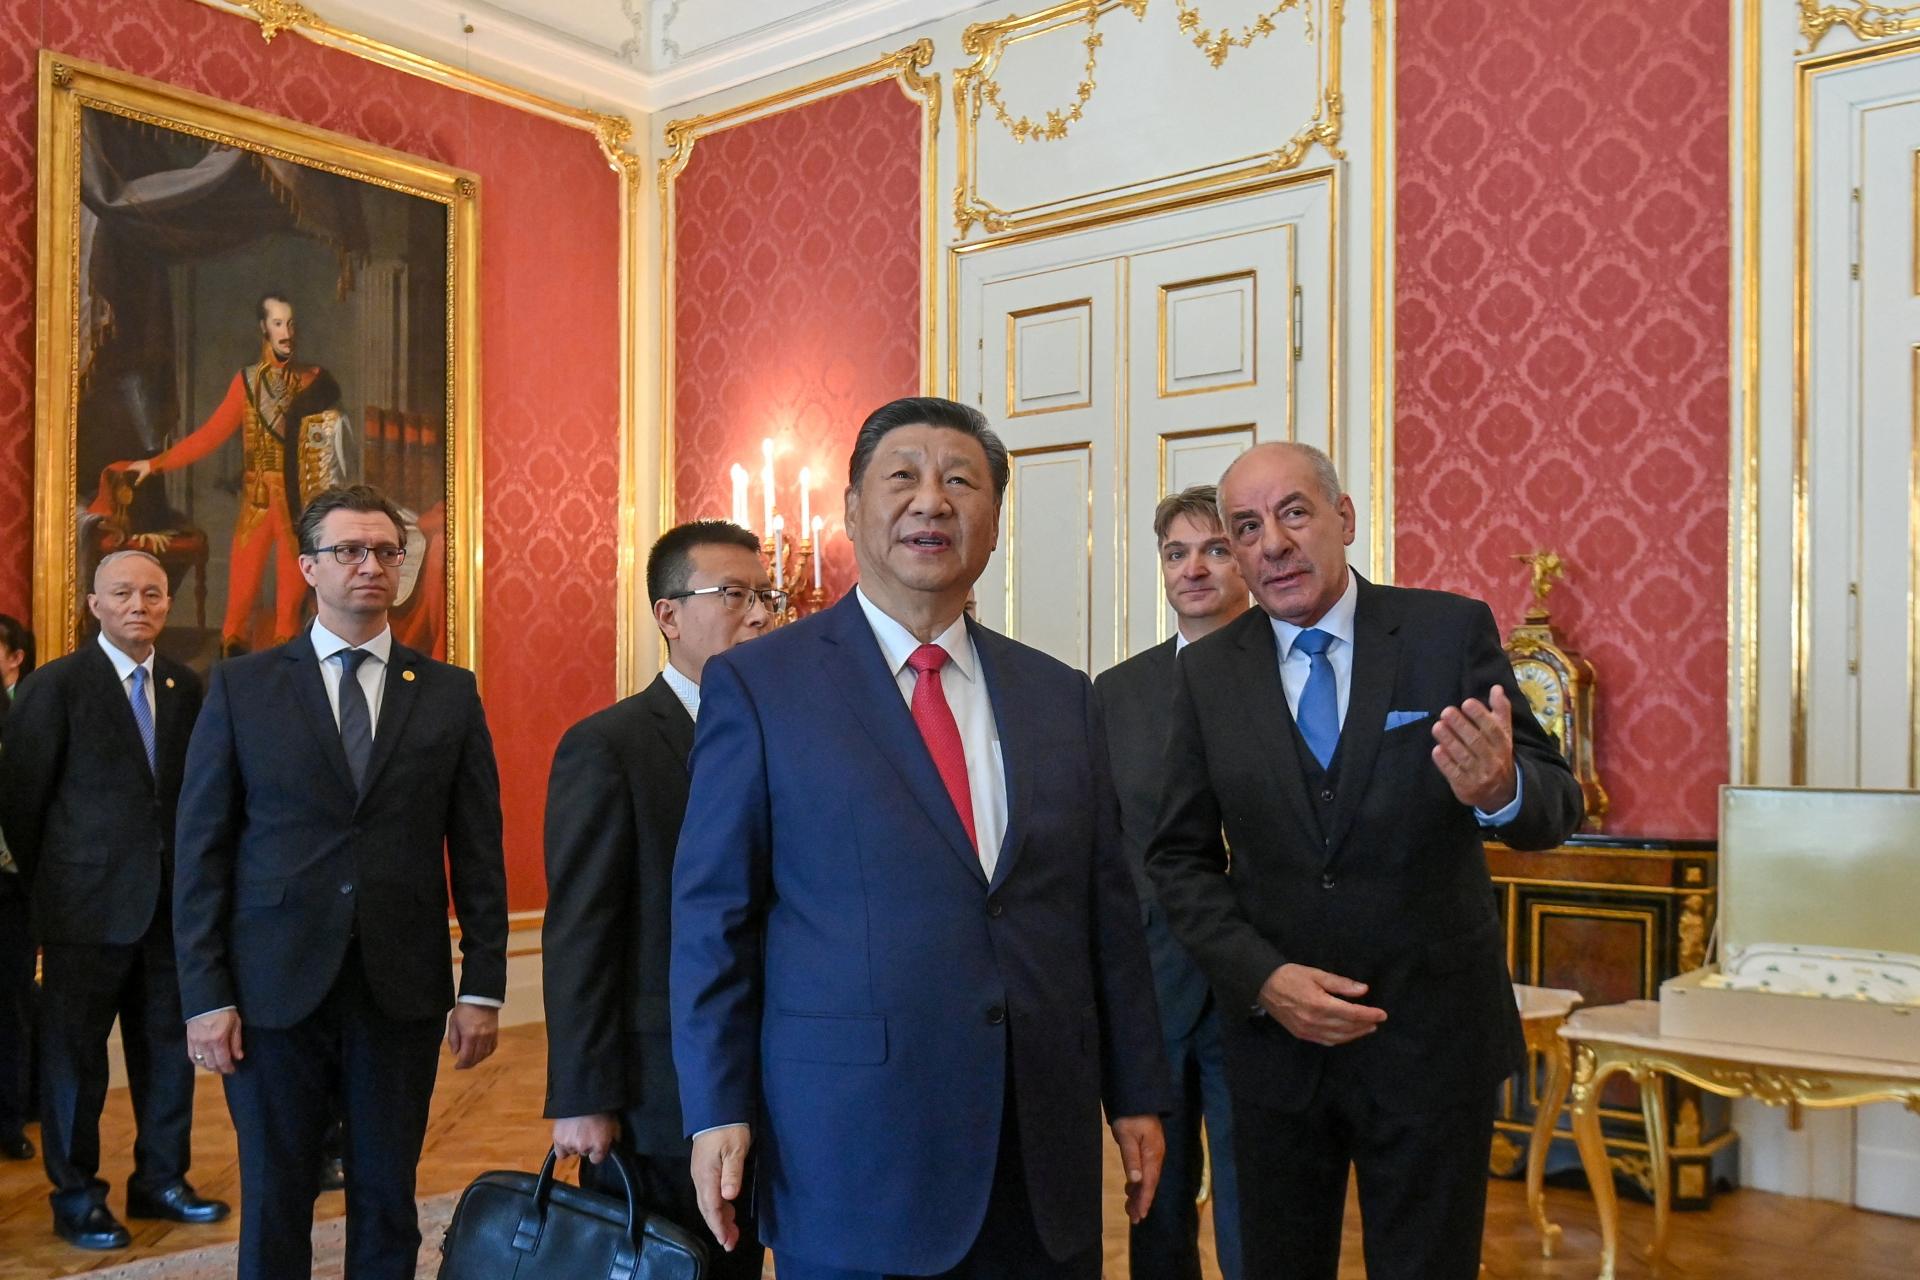 Čínskeho prezidenta prijali na Budínskom hrade, neskôr bude rokovať s Orbánom